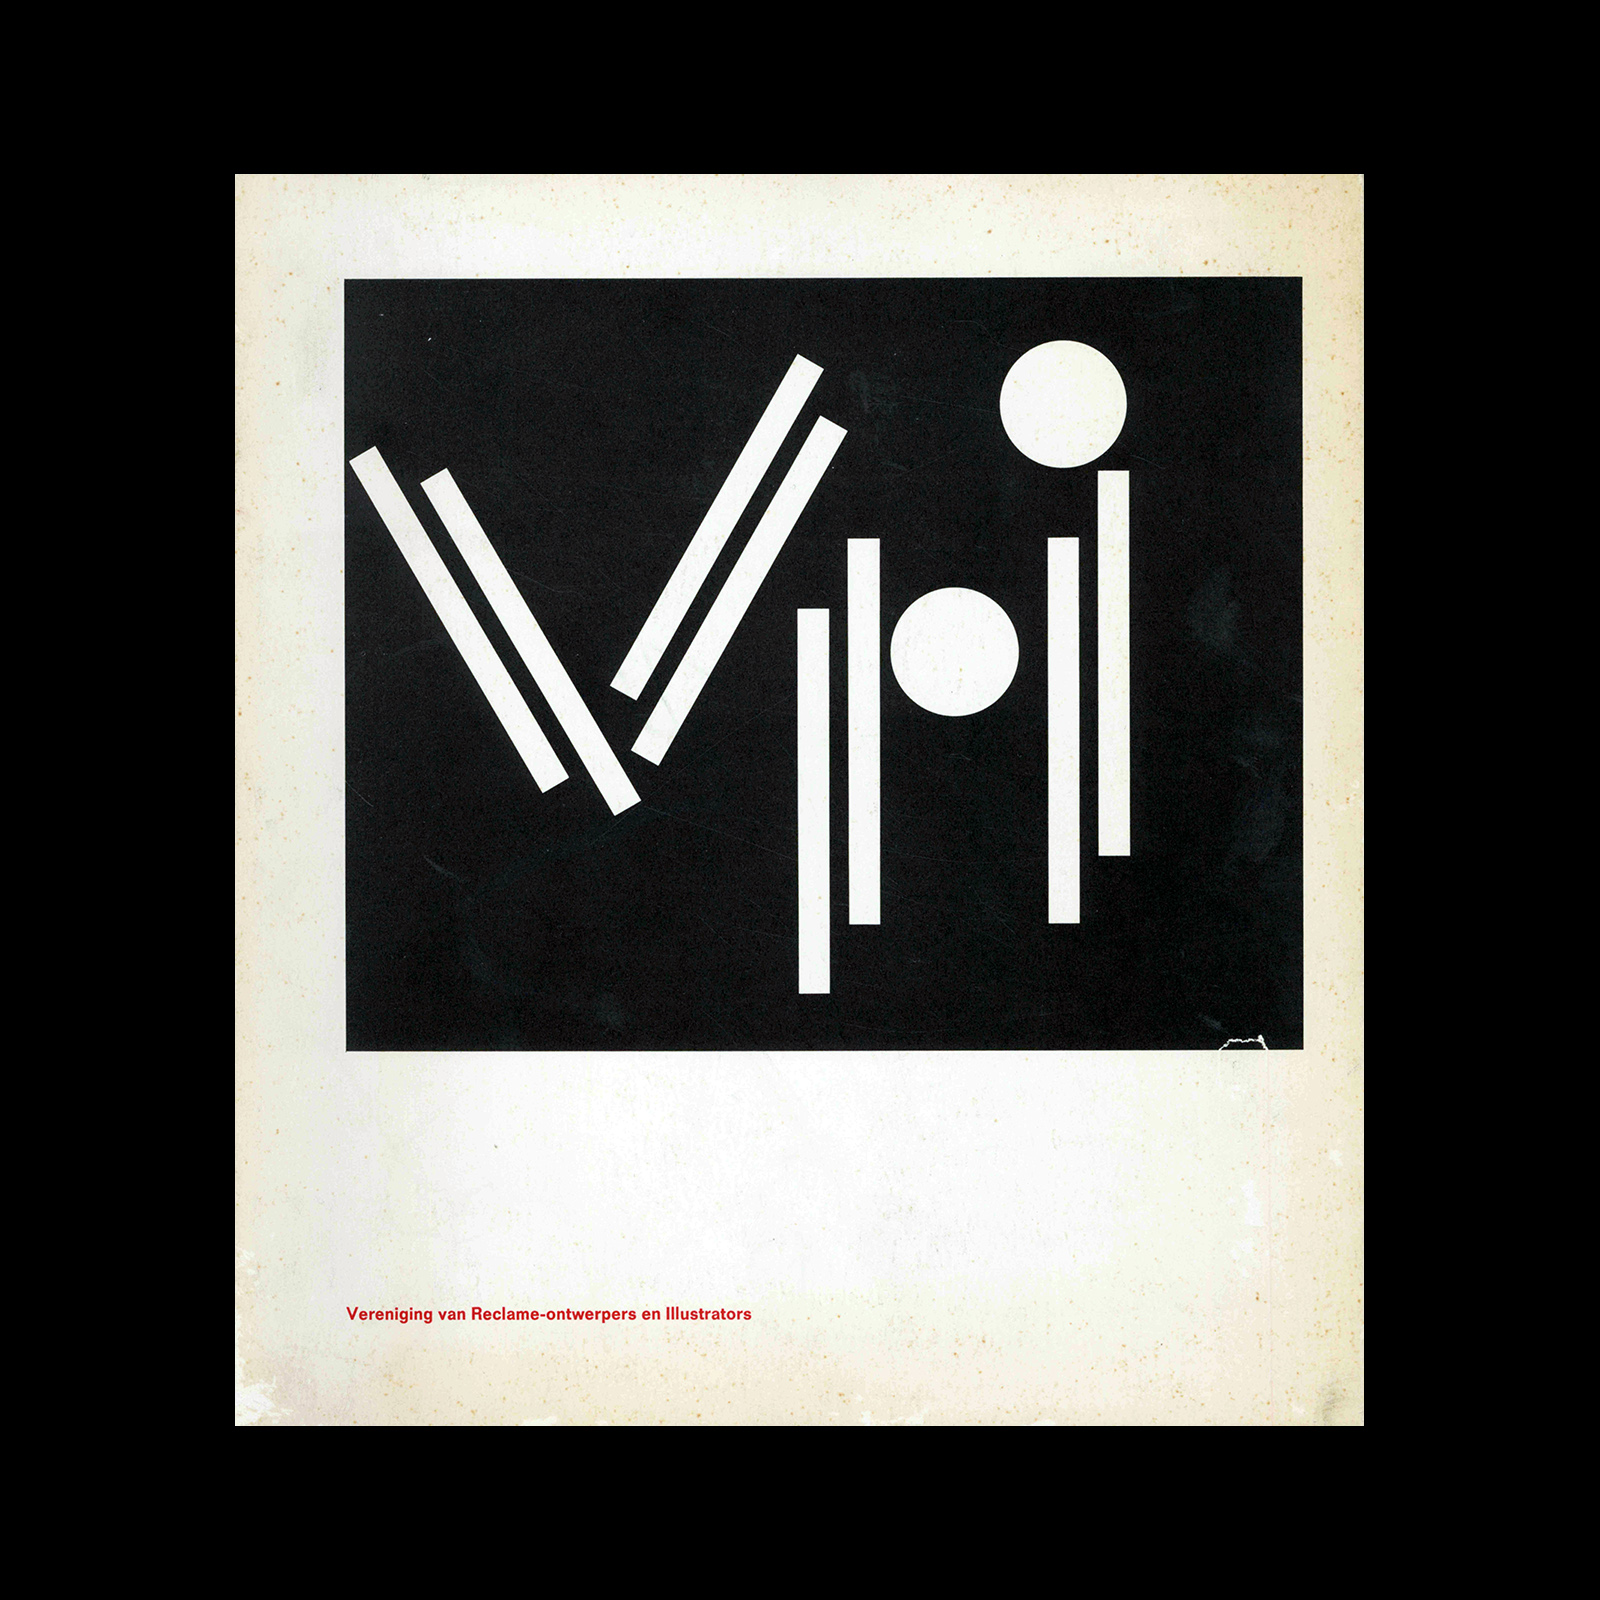 Vereniging van Reclame-ontwerpers en Illustrators, 1959